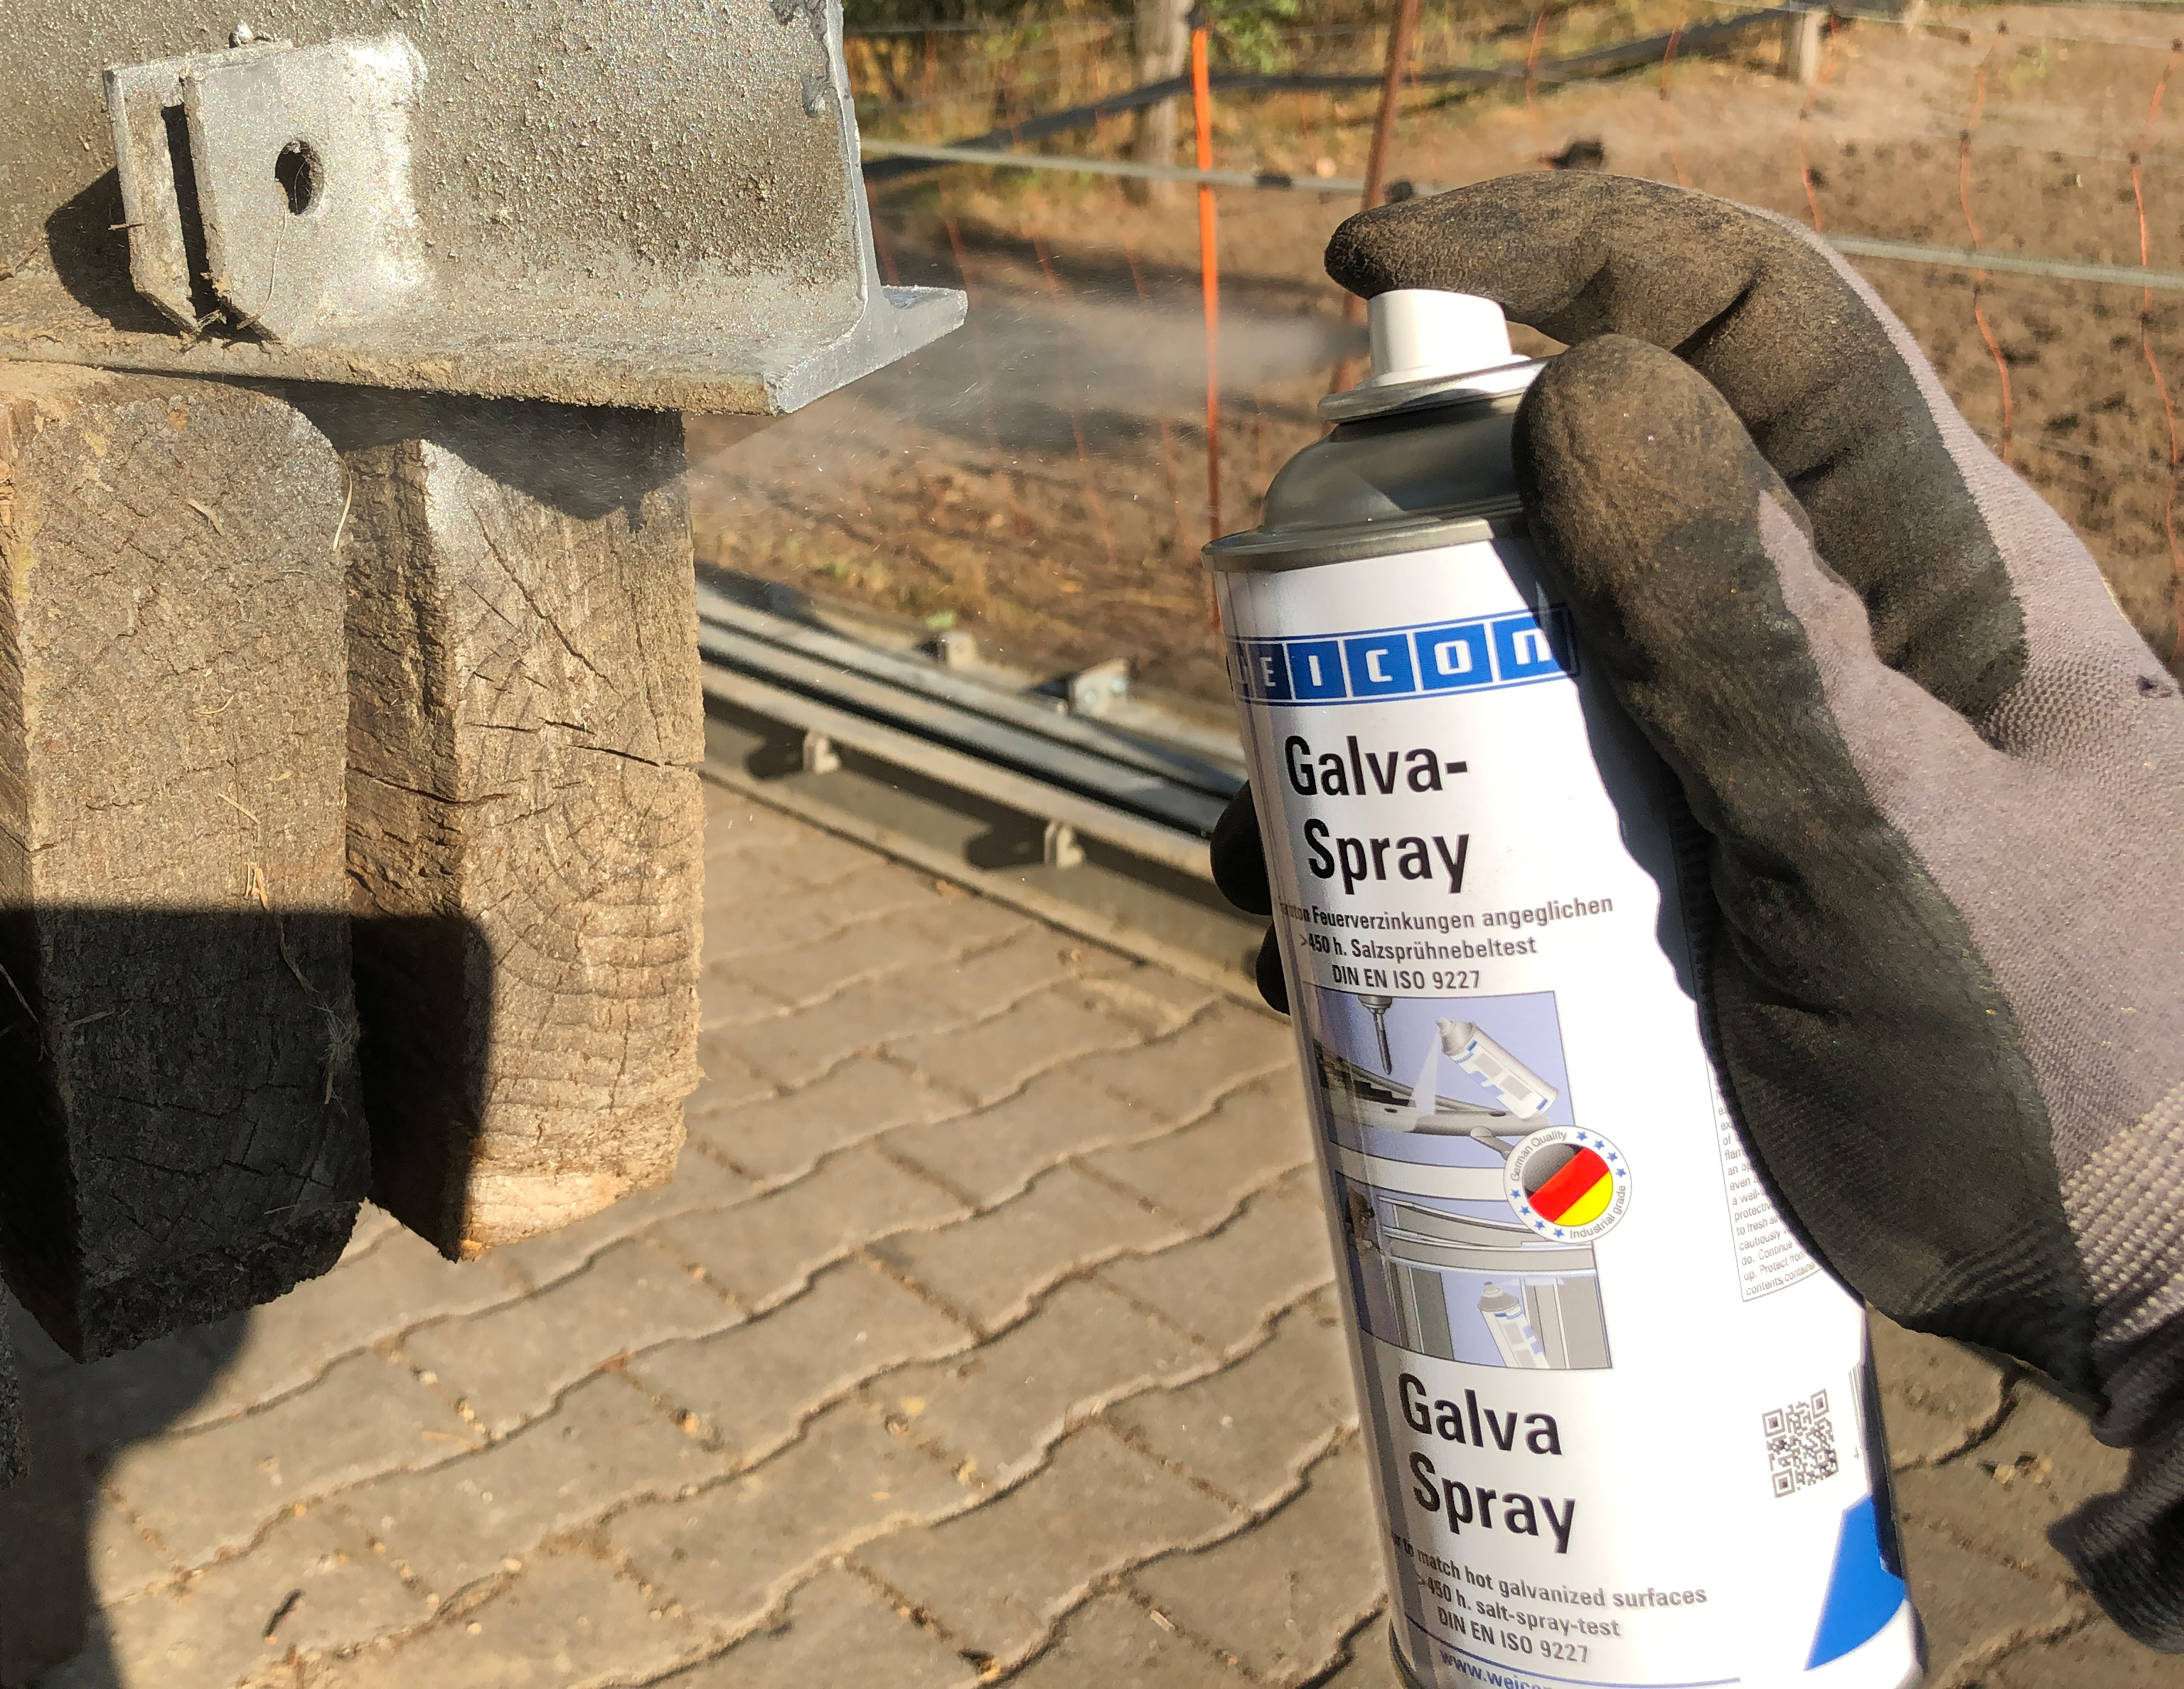 Galvaniz-Sprey | cathodic corrosion protection